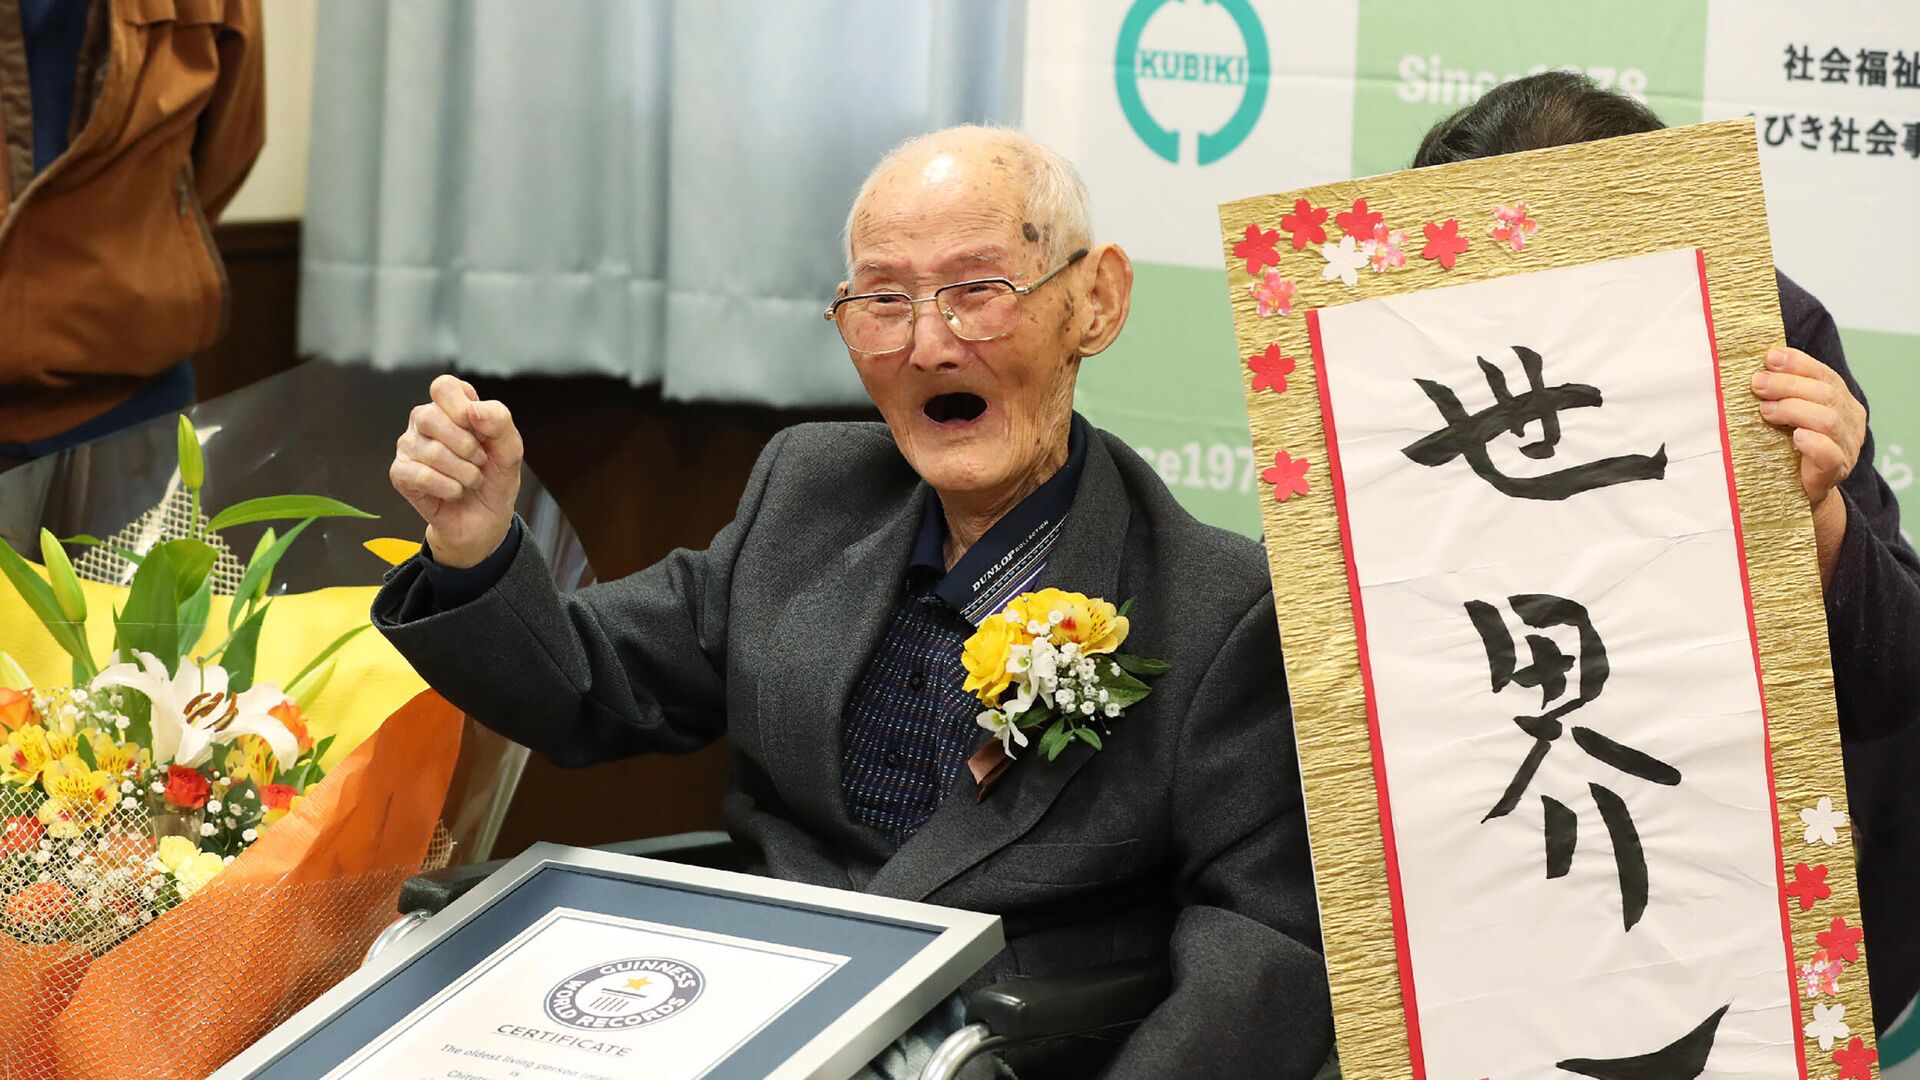 112-летний японец Ватанабэ Титэцу позирует рядом с наградным знаком как самому старому из ныне живущих мужчин - РИА Новости, 1920, 25.02.2020